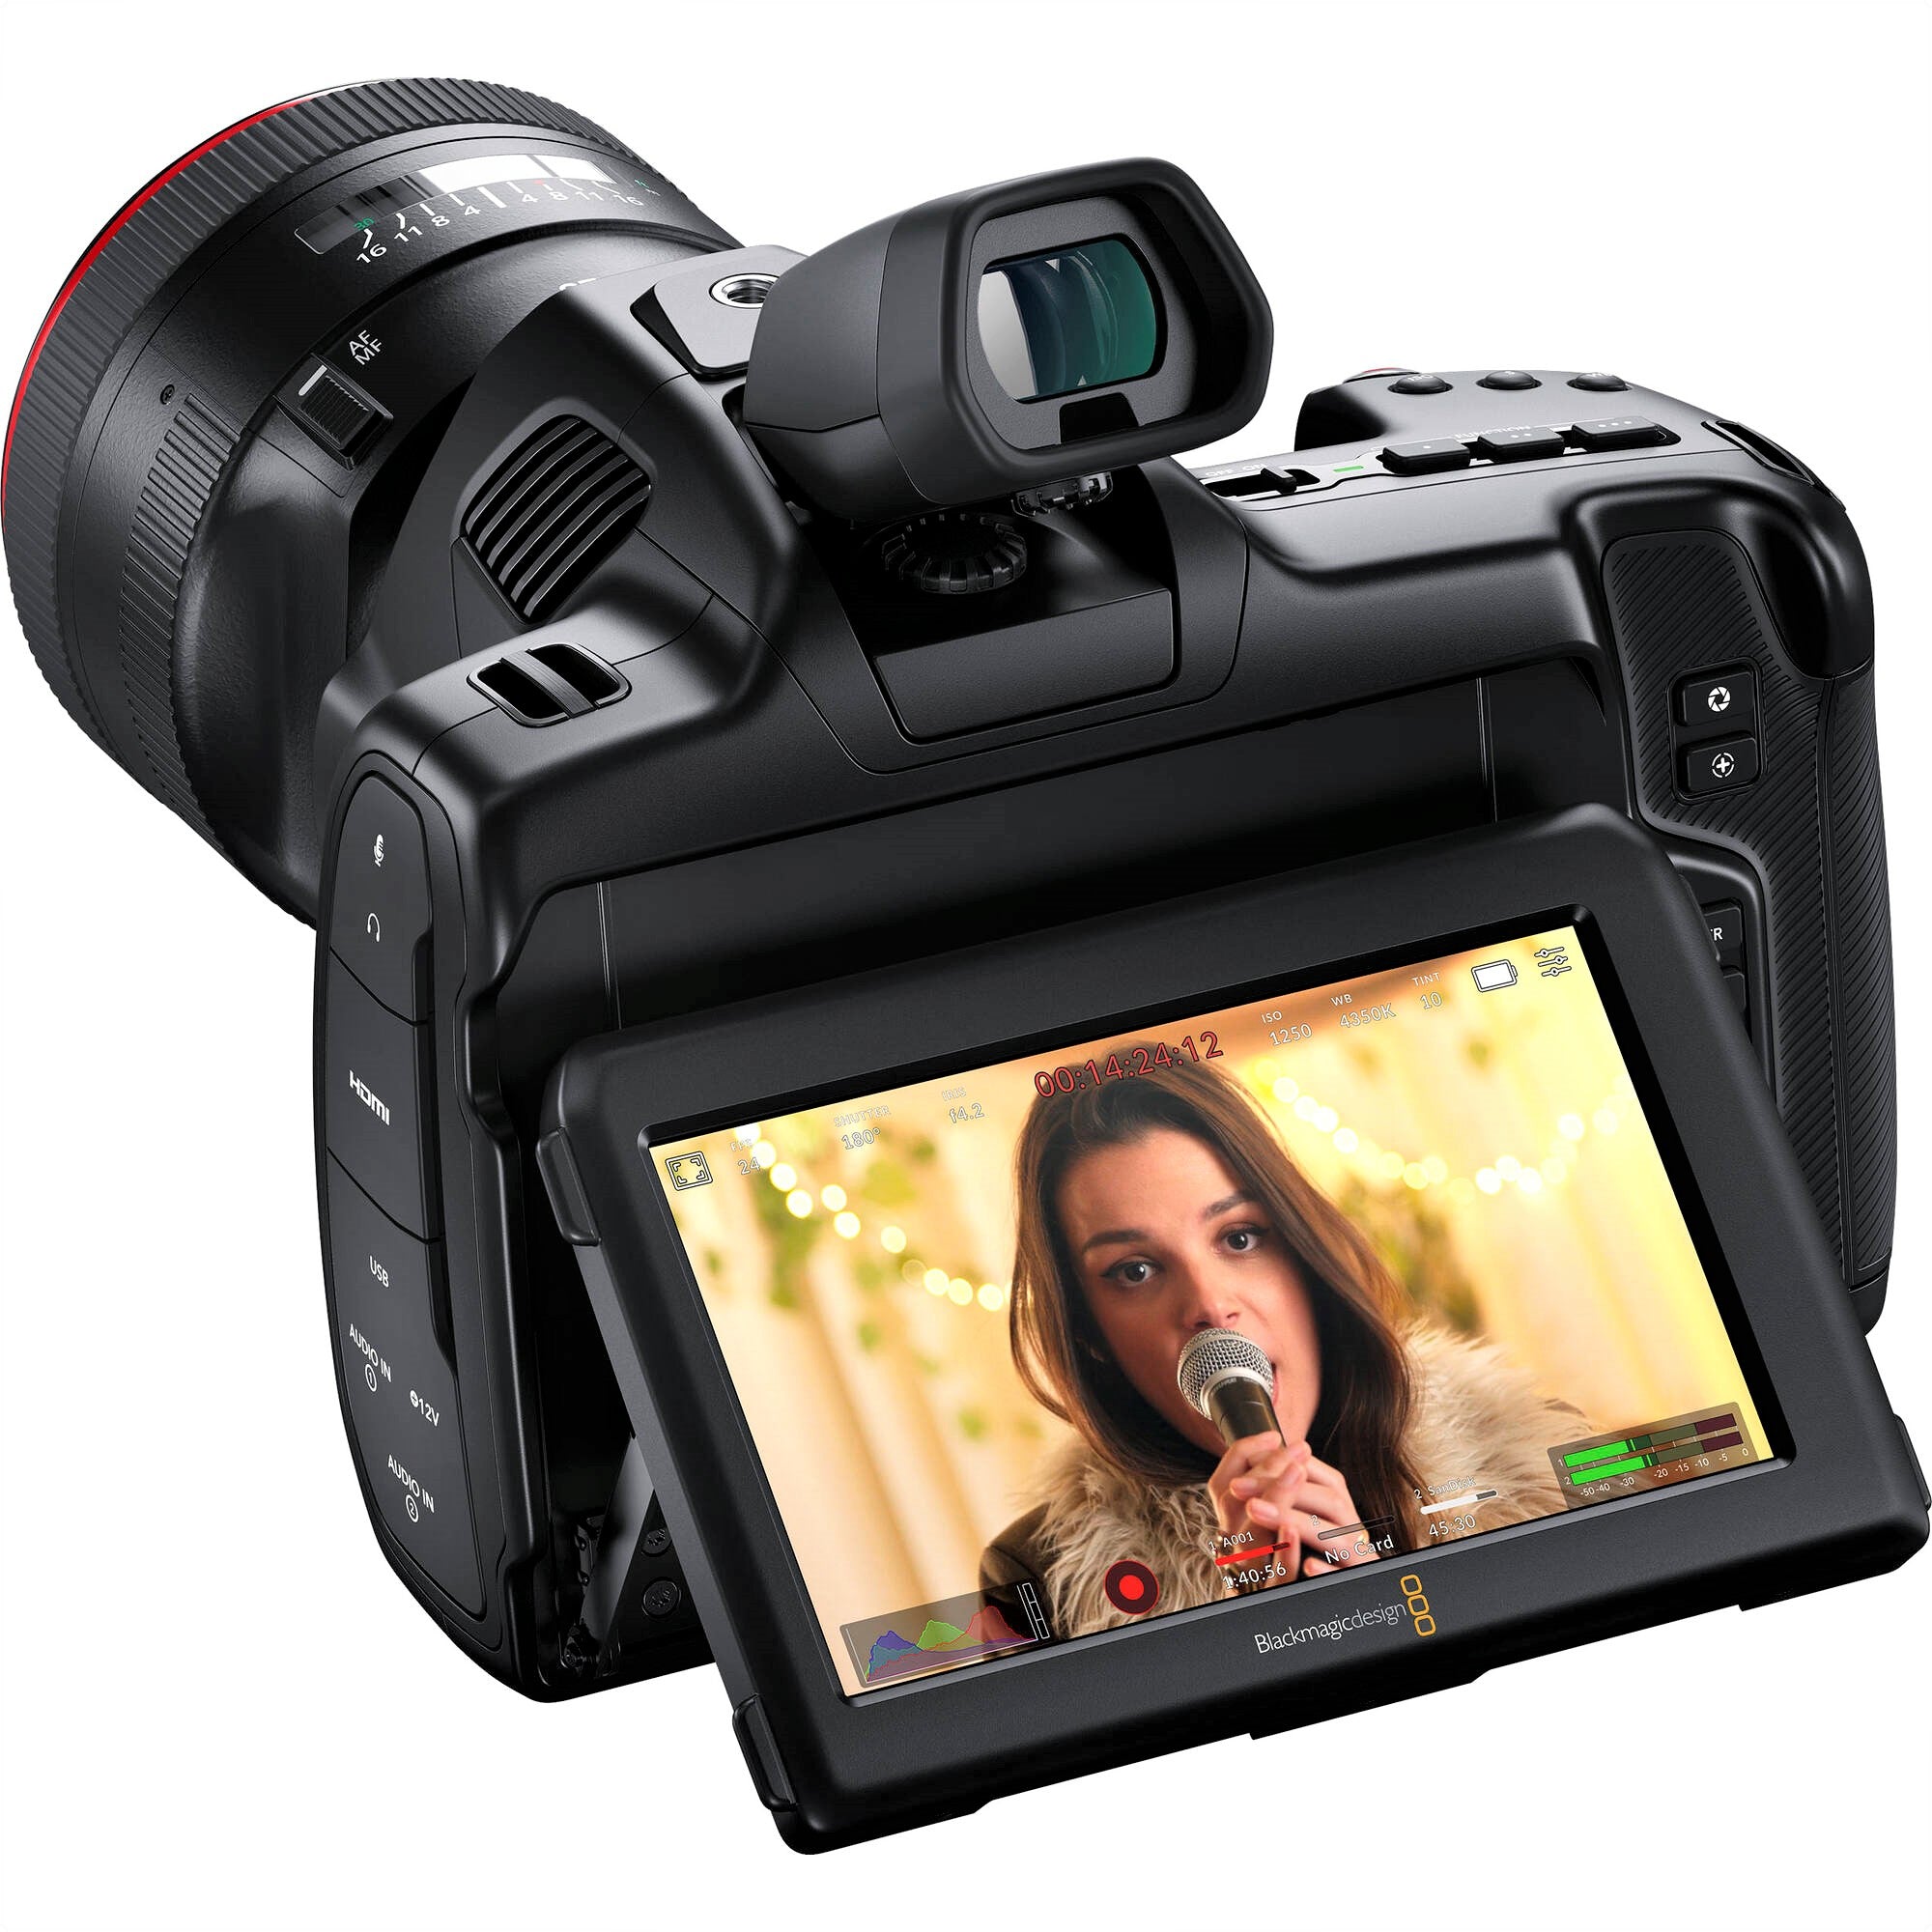 Blackmagic Design Pocket Cinema Camera 6K G2 - Electronic Viewfinder & Lens Not Included